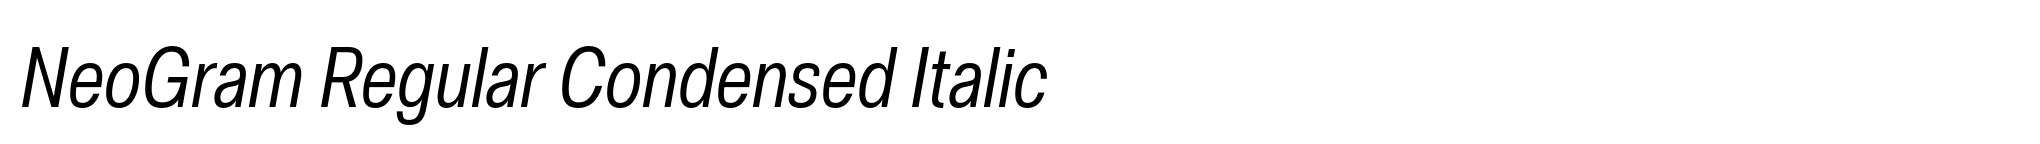 NeoGram Regular Condensed Italic image